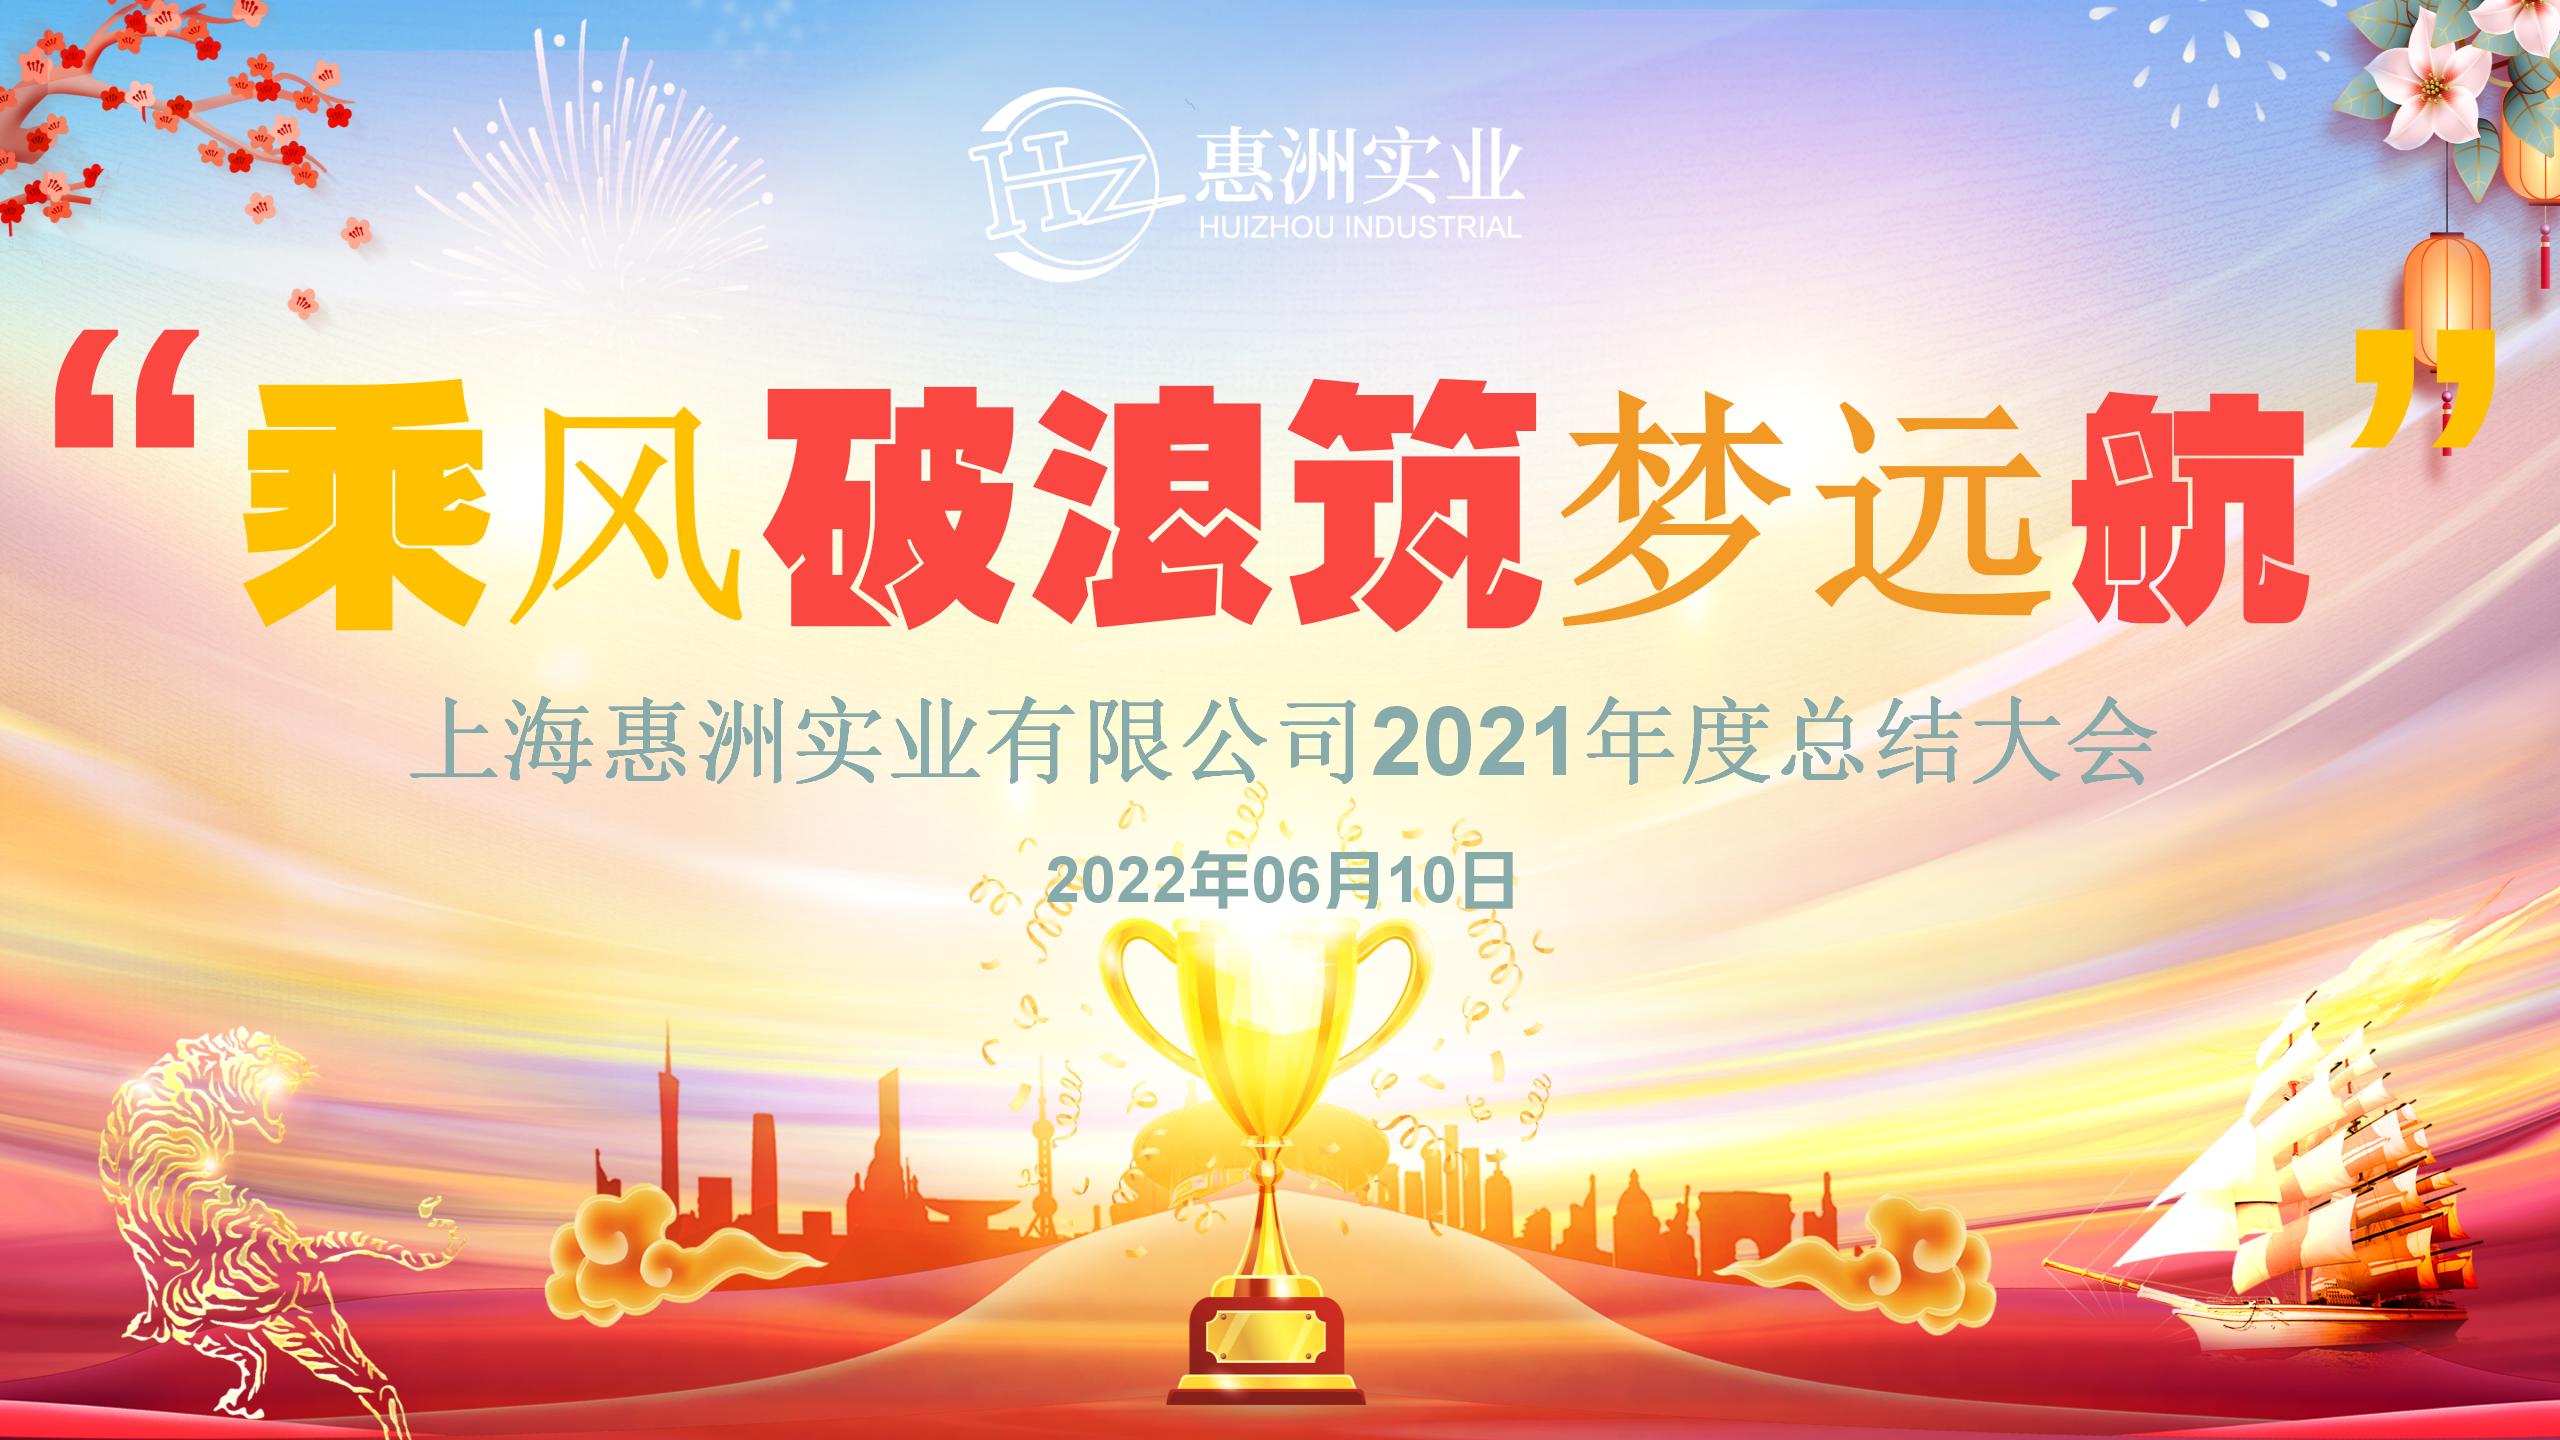 patemon taunan huizhou 2021